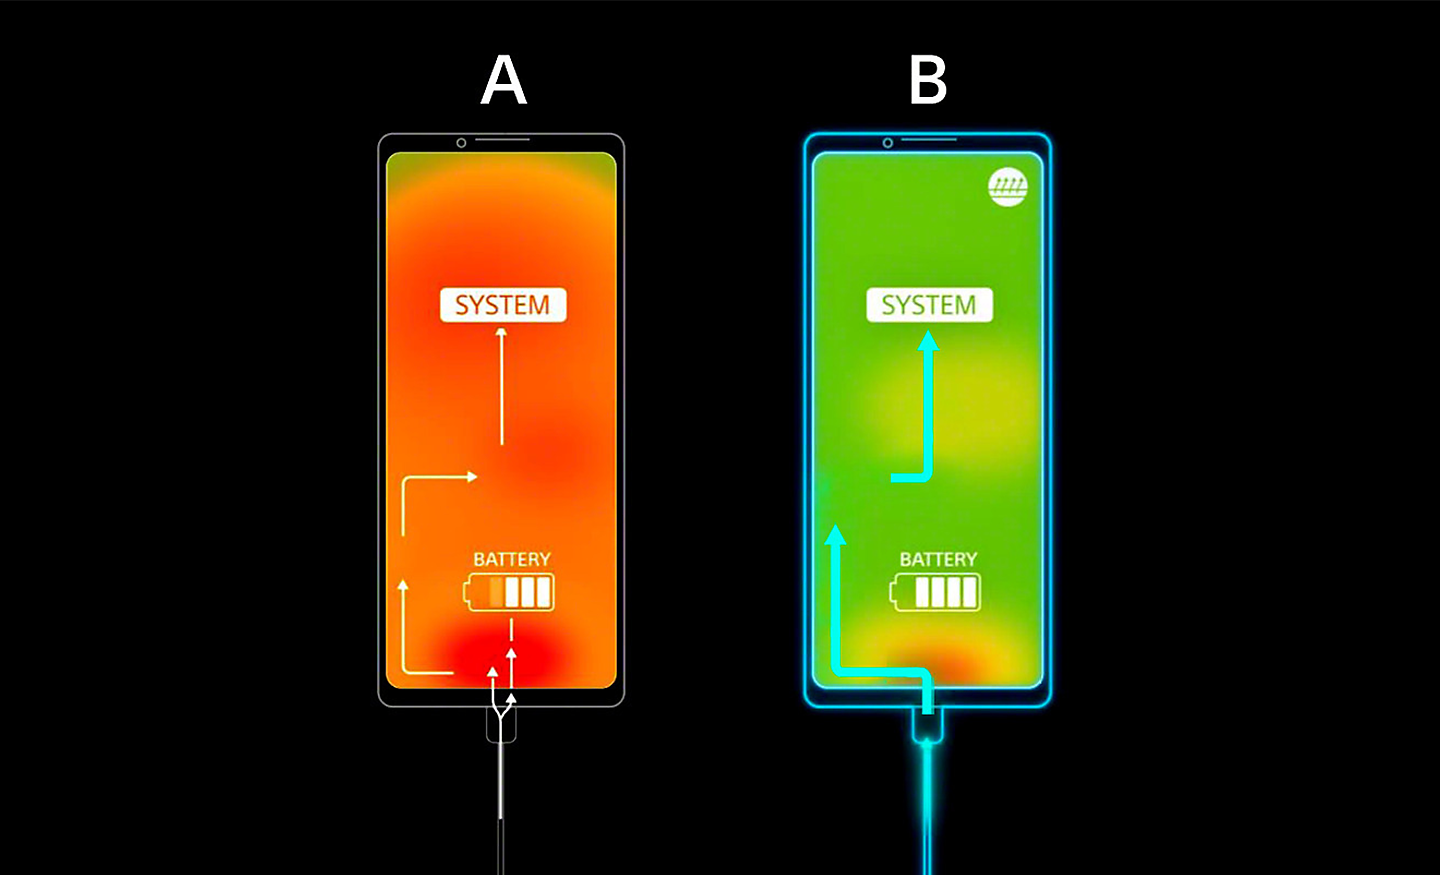 圖表顯示手機 A 過熱且螢幕呈橙色，而手機 B 的螢幕則呈綠色